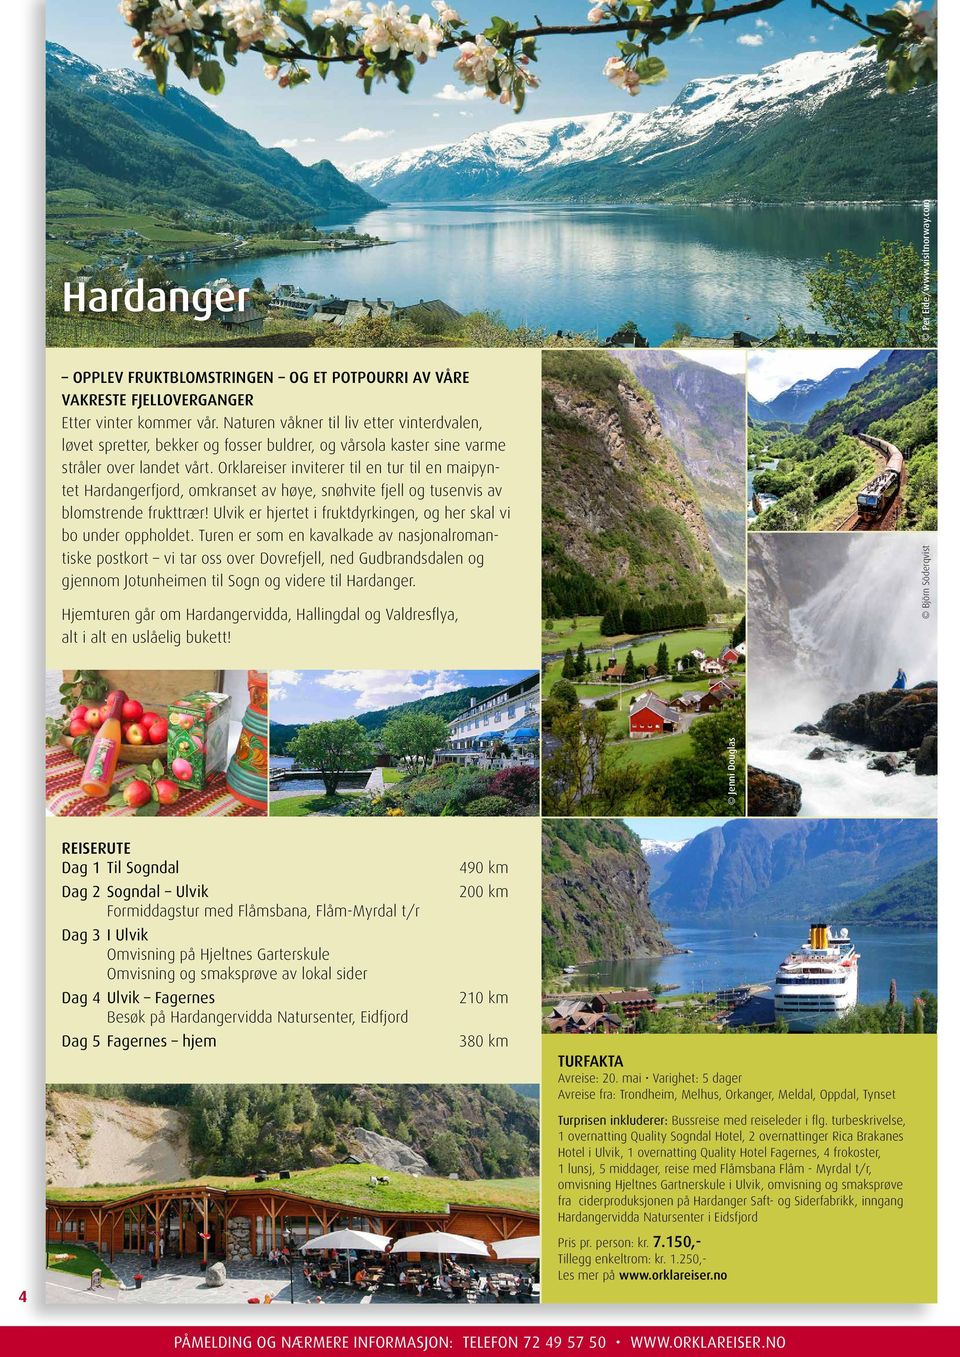 Orklareiser inviterer til en tur til en maipyntet Hardangerfjord, omkranset av høye, snøhvite fjell og tusenvis av blomstrende frukttrær!